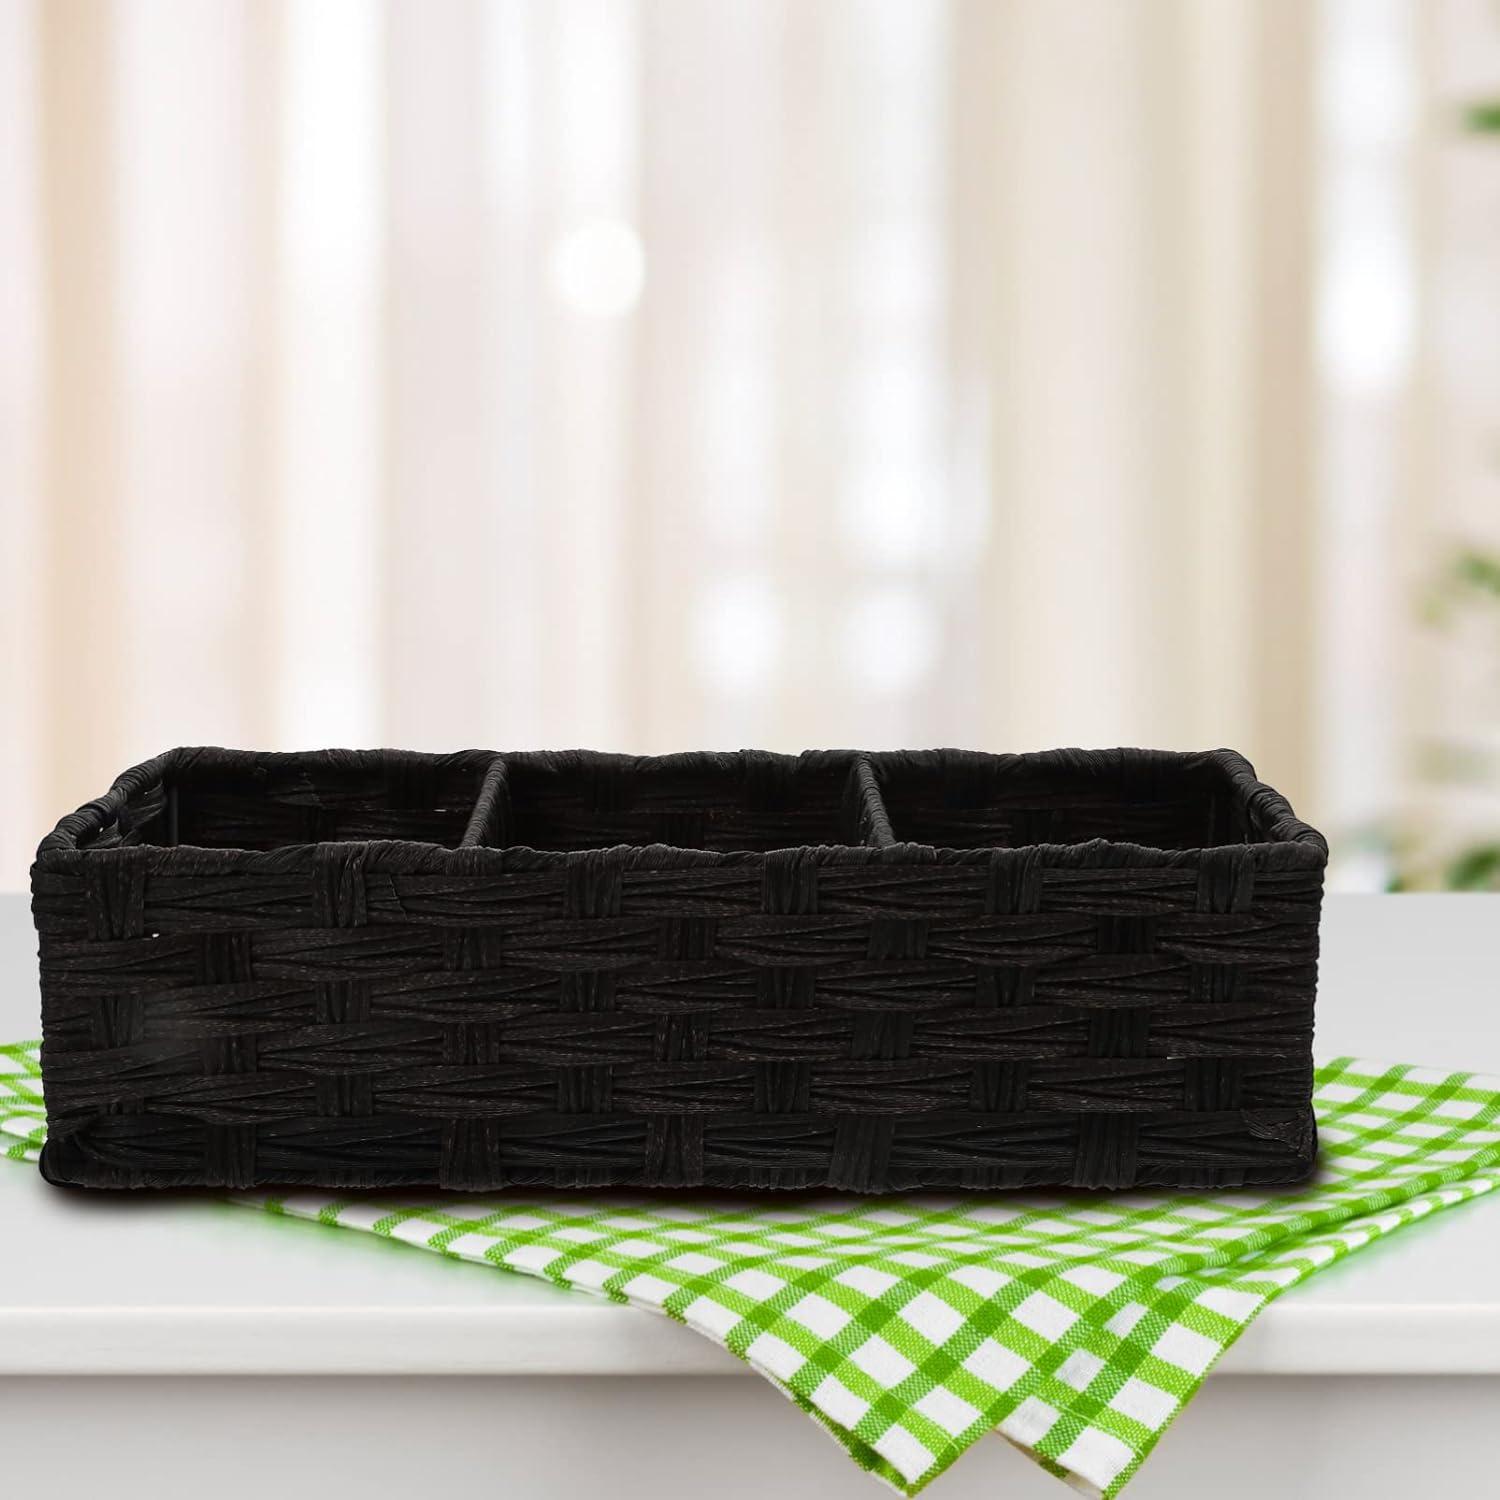 STOBOK Black Woven Storage Baskets Toilet Tank Topper Paper Basket